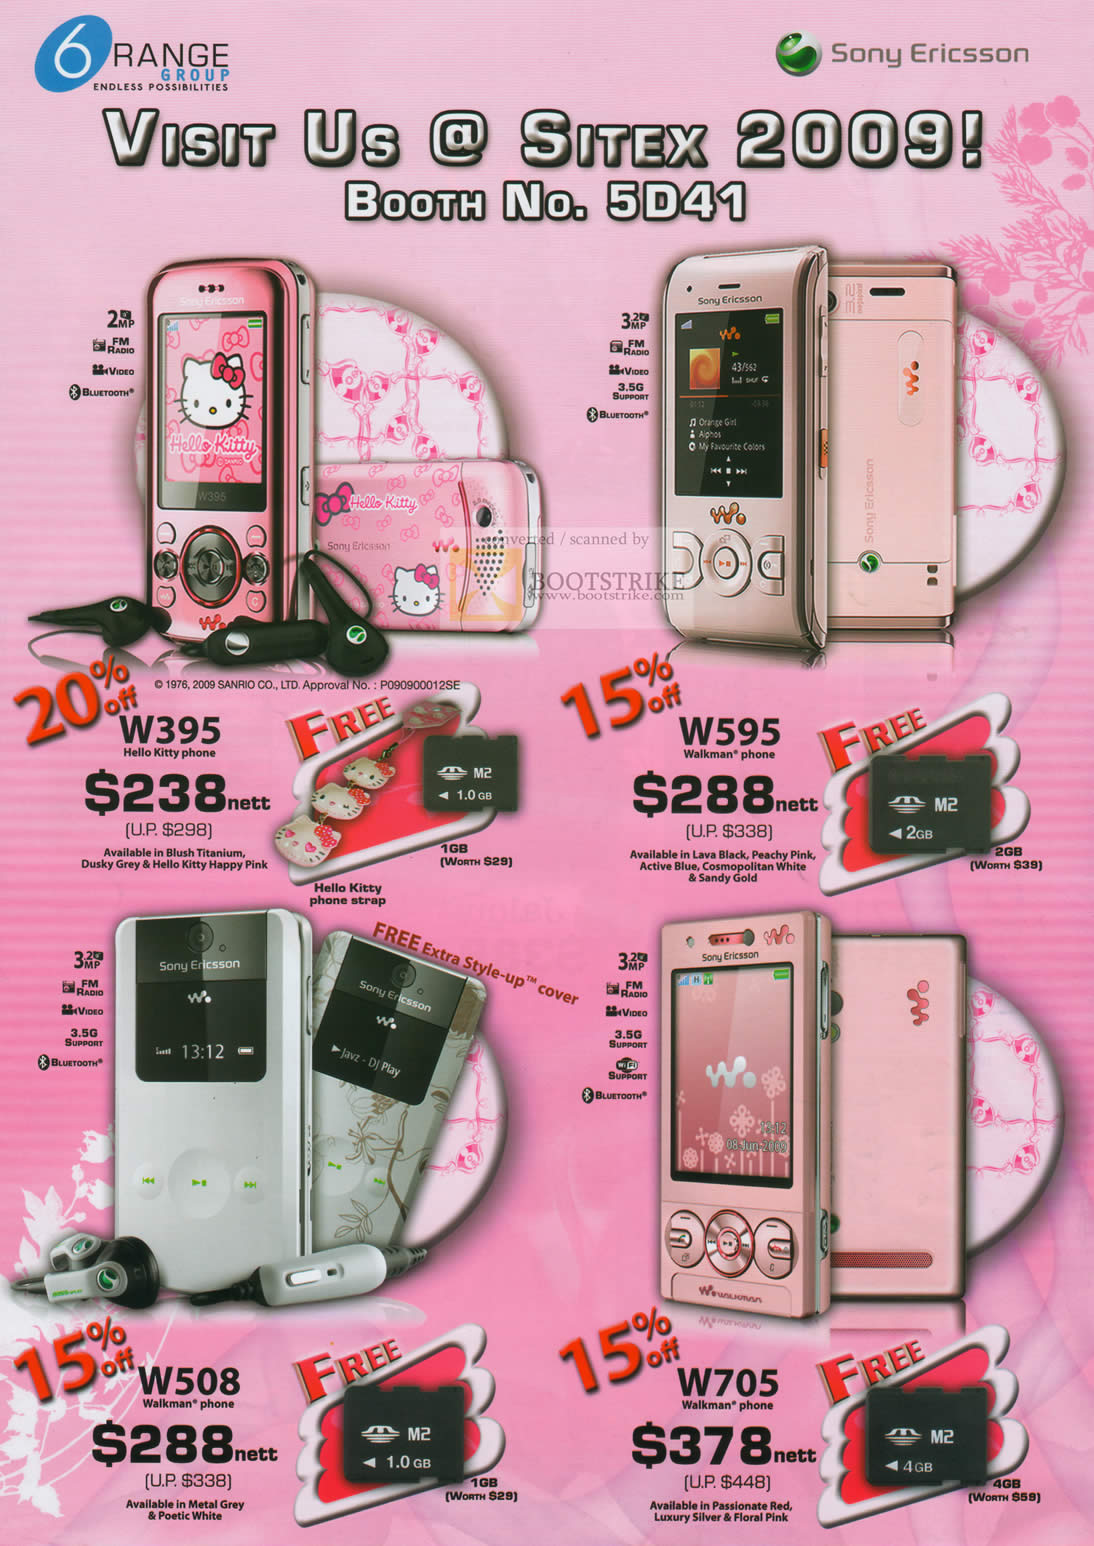 Sitex 2009 price list image brochure of Sony Ericsson 6Range Mobile Phones W395 W595 W508 W705